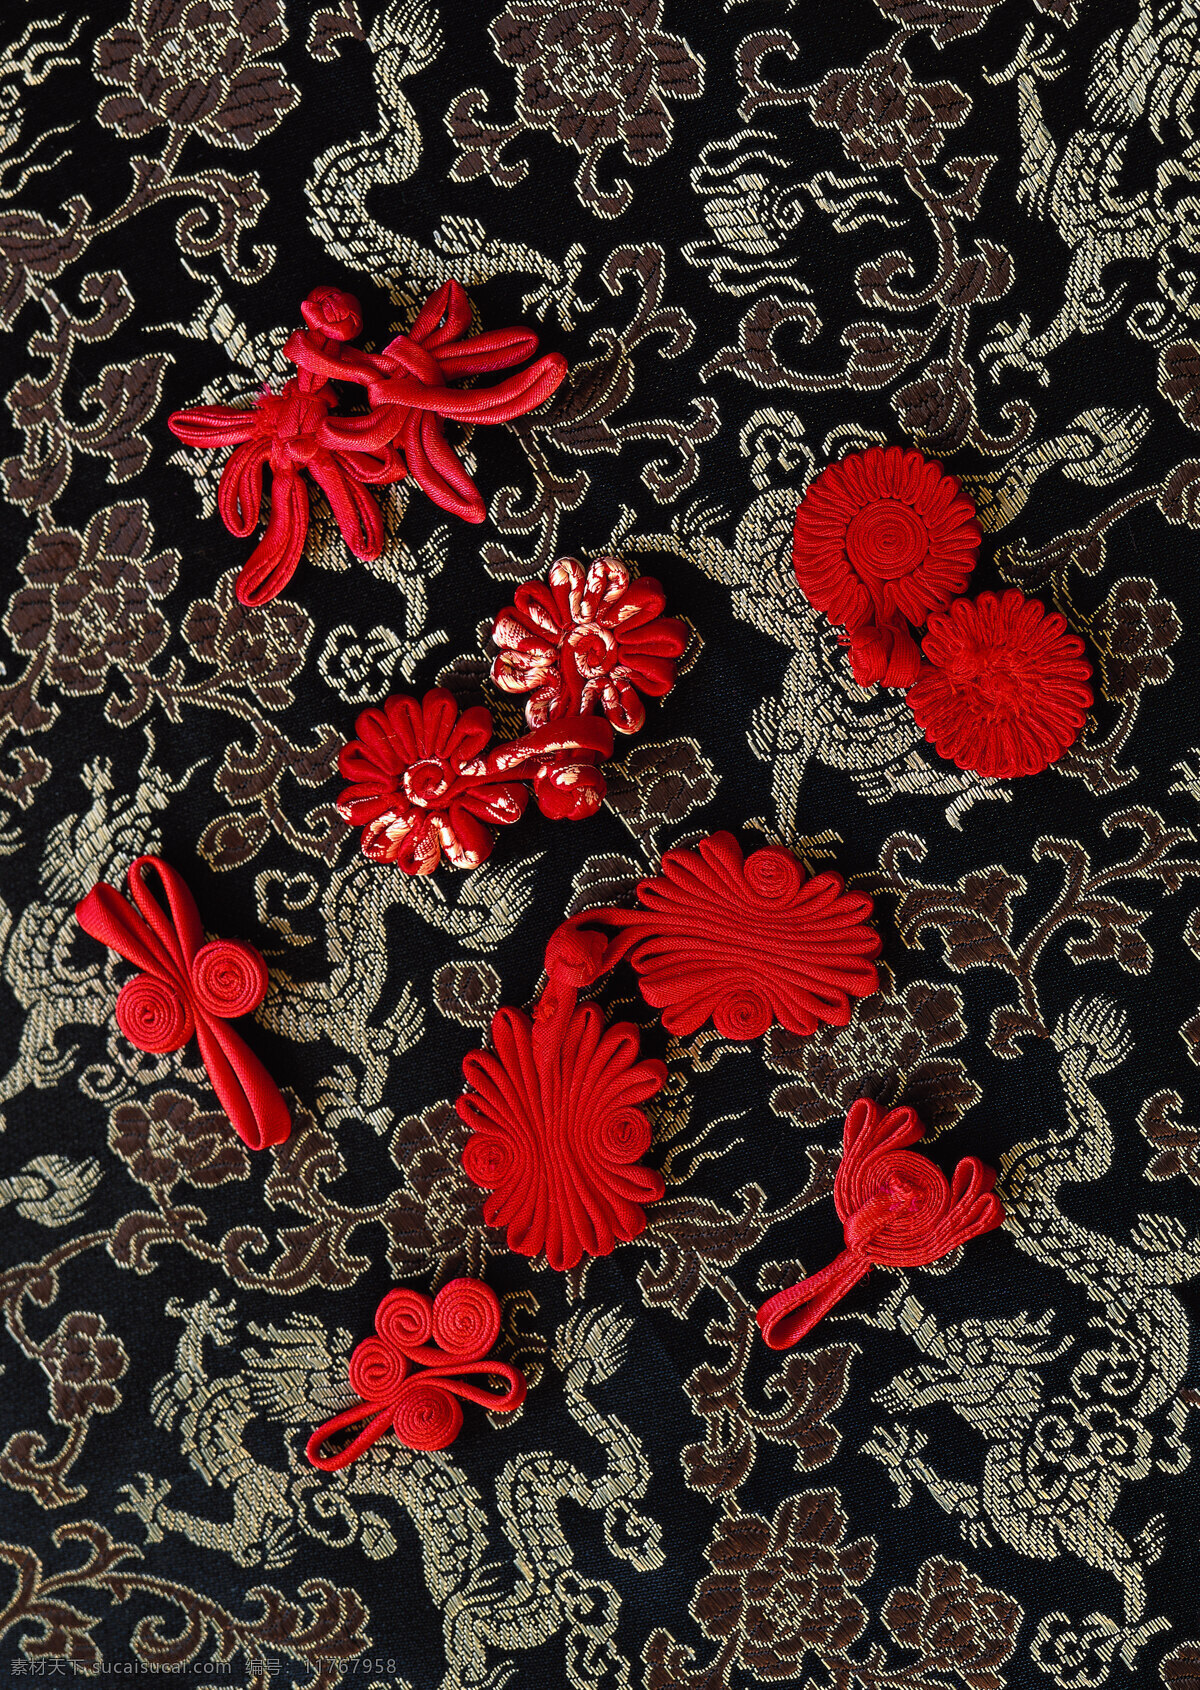 唐装 布料 丝绸 针织 刺绣 古典 典雅 中国风 文化 高清 旗袍 人文素材 文化艺术 传统文化